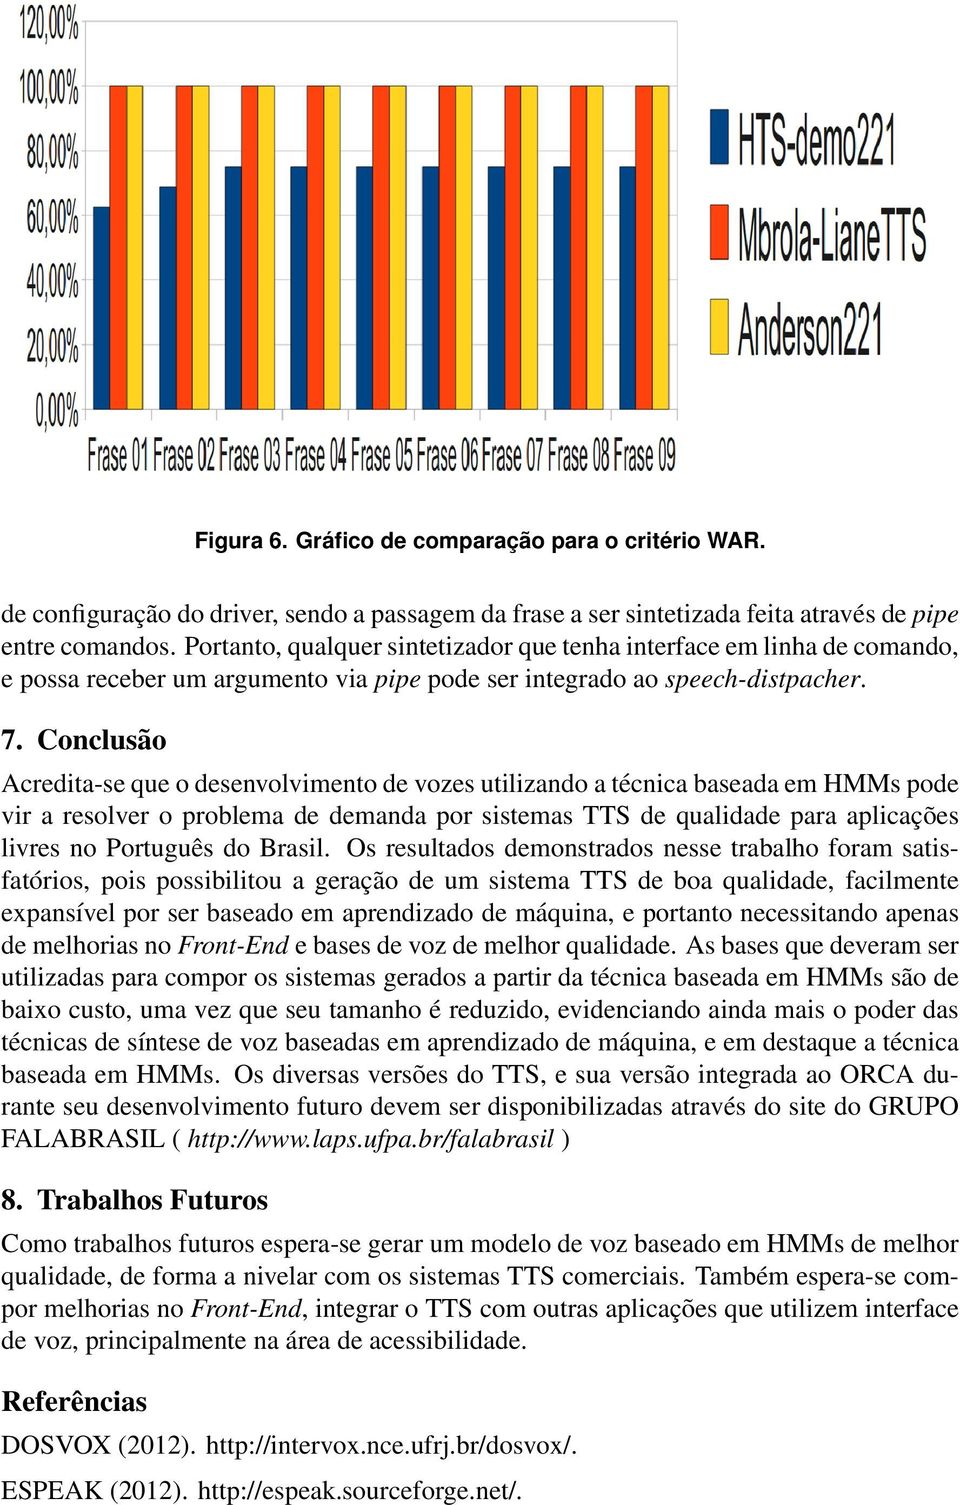 Conclusão Acredita-se que o desenvolvimento de vozes utilizando a técnica baseada em HMMs pode vir a resolver o problema de demanda por sistemas TTS de qualidade para aplicações livres no Português